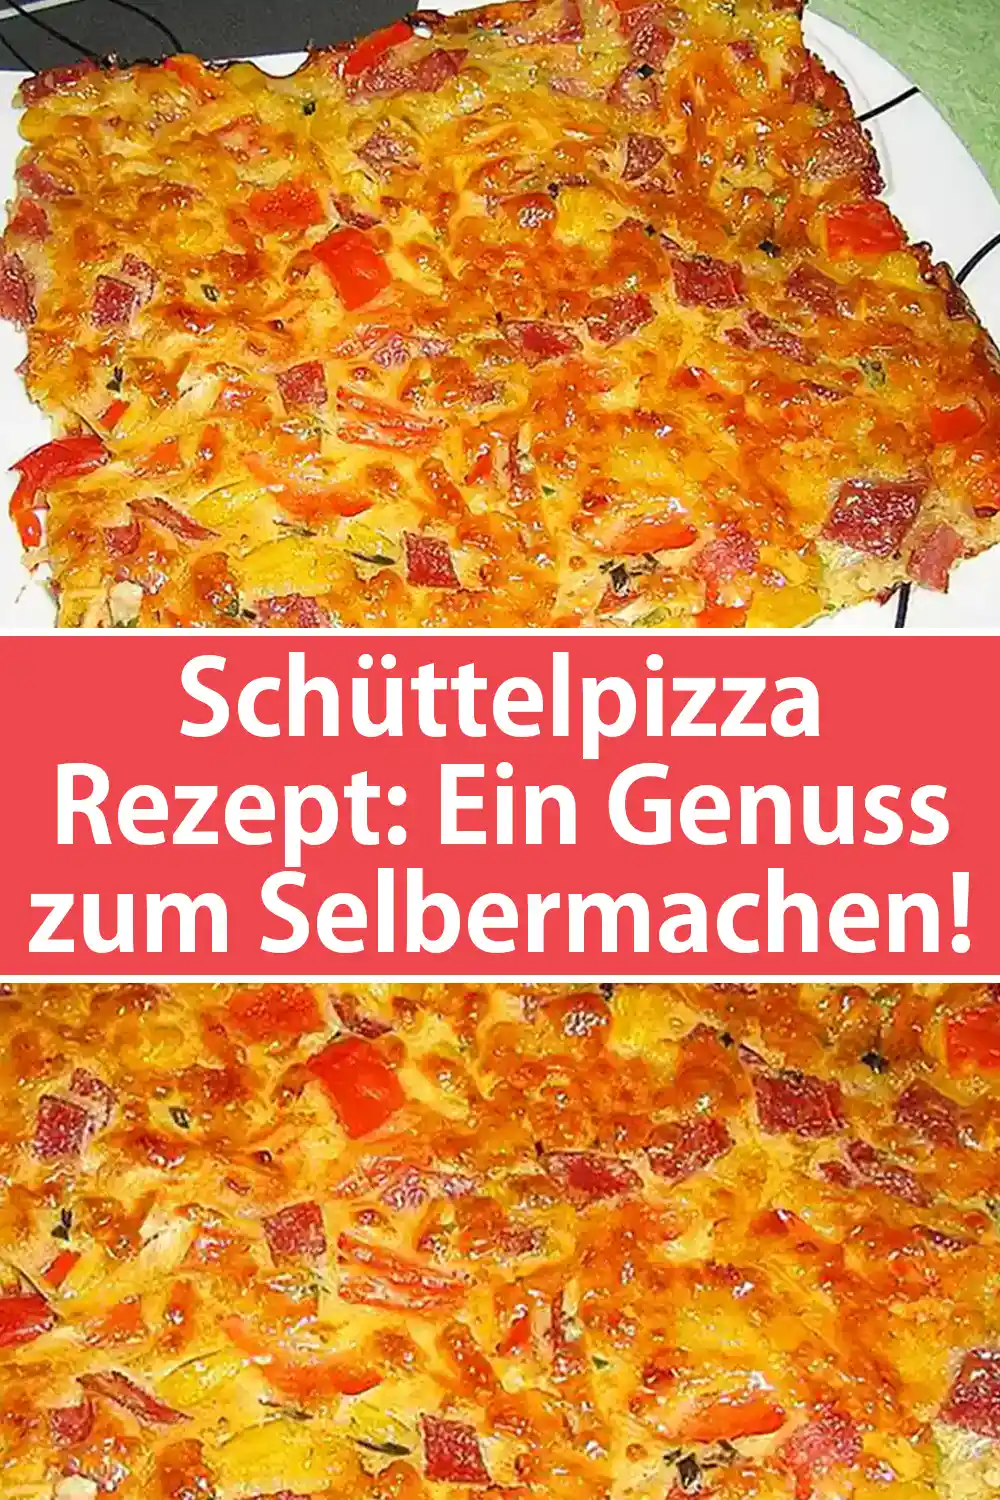 Schüttelpizza Rezept: Ein Genuss zum Selbermachen!